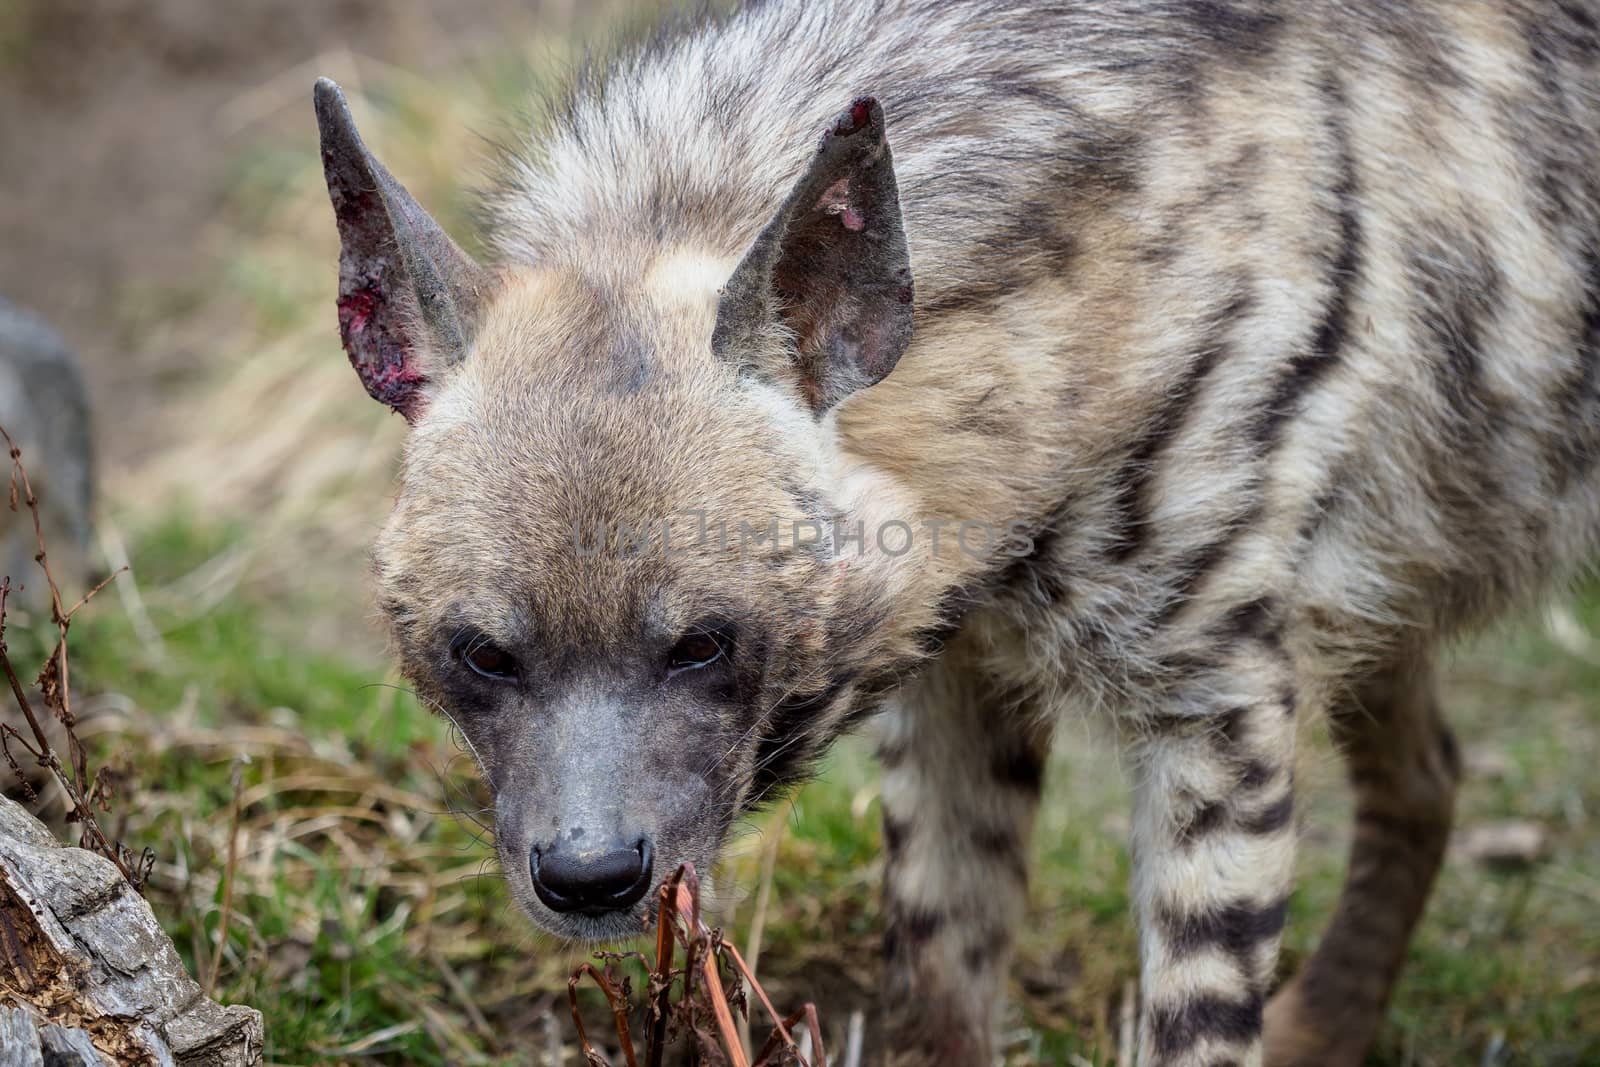 Striped hyena (Hyaena hyaena sultana) by xtrekx